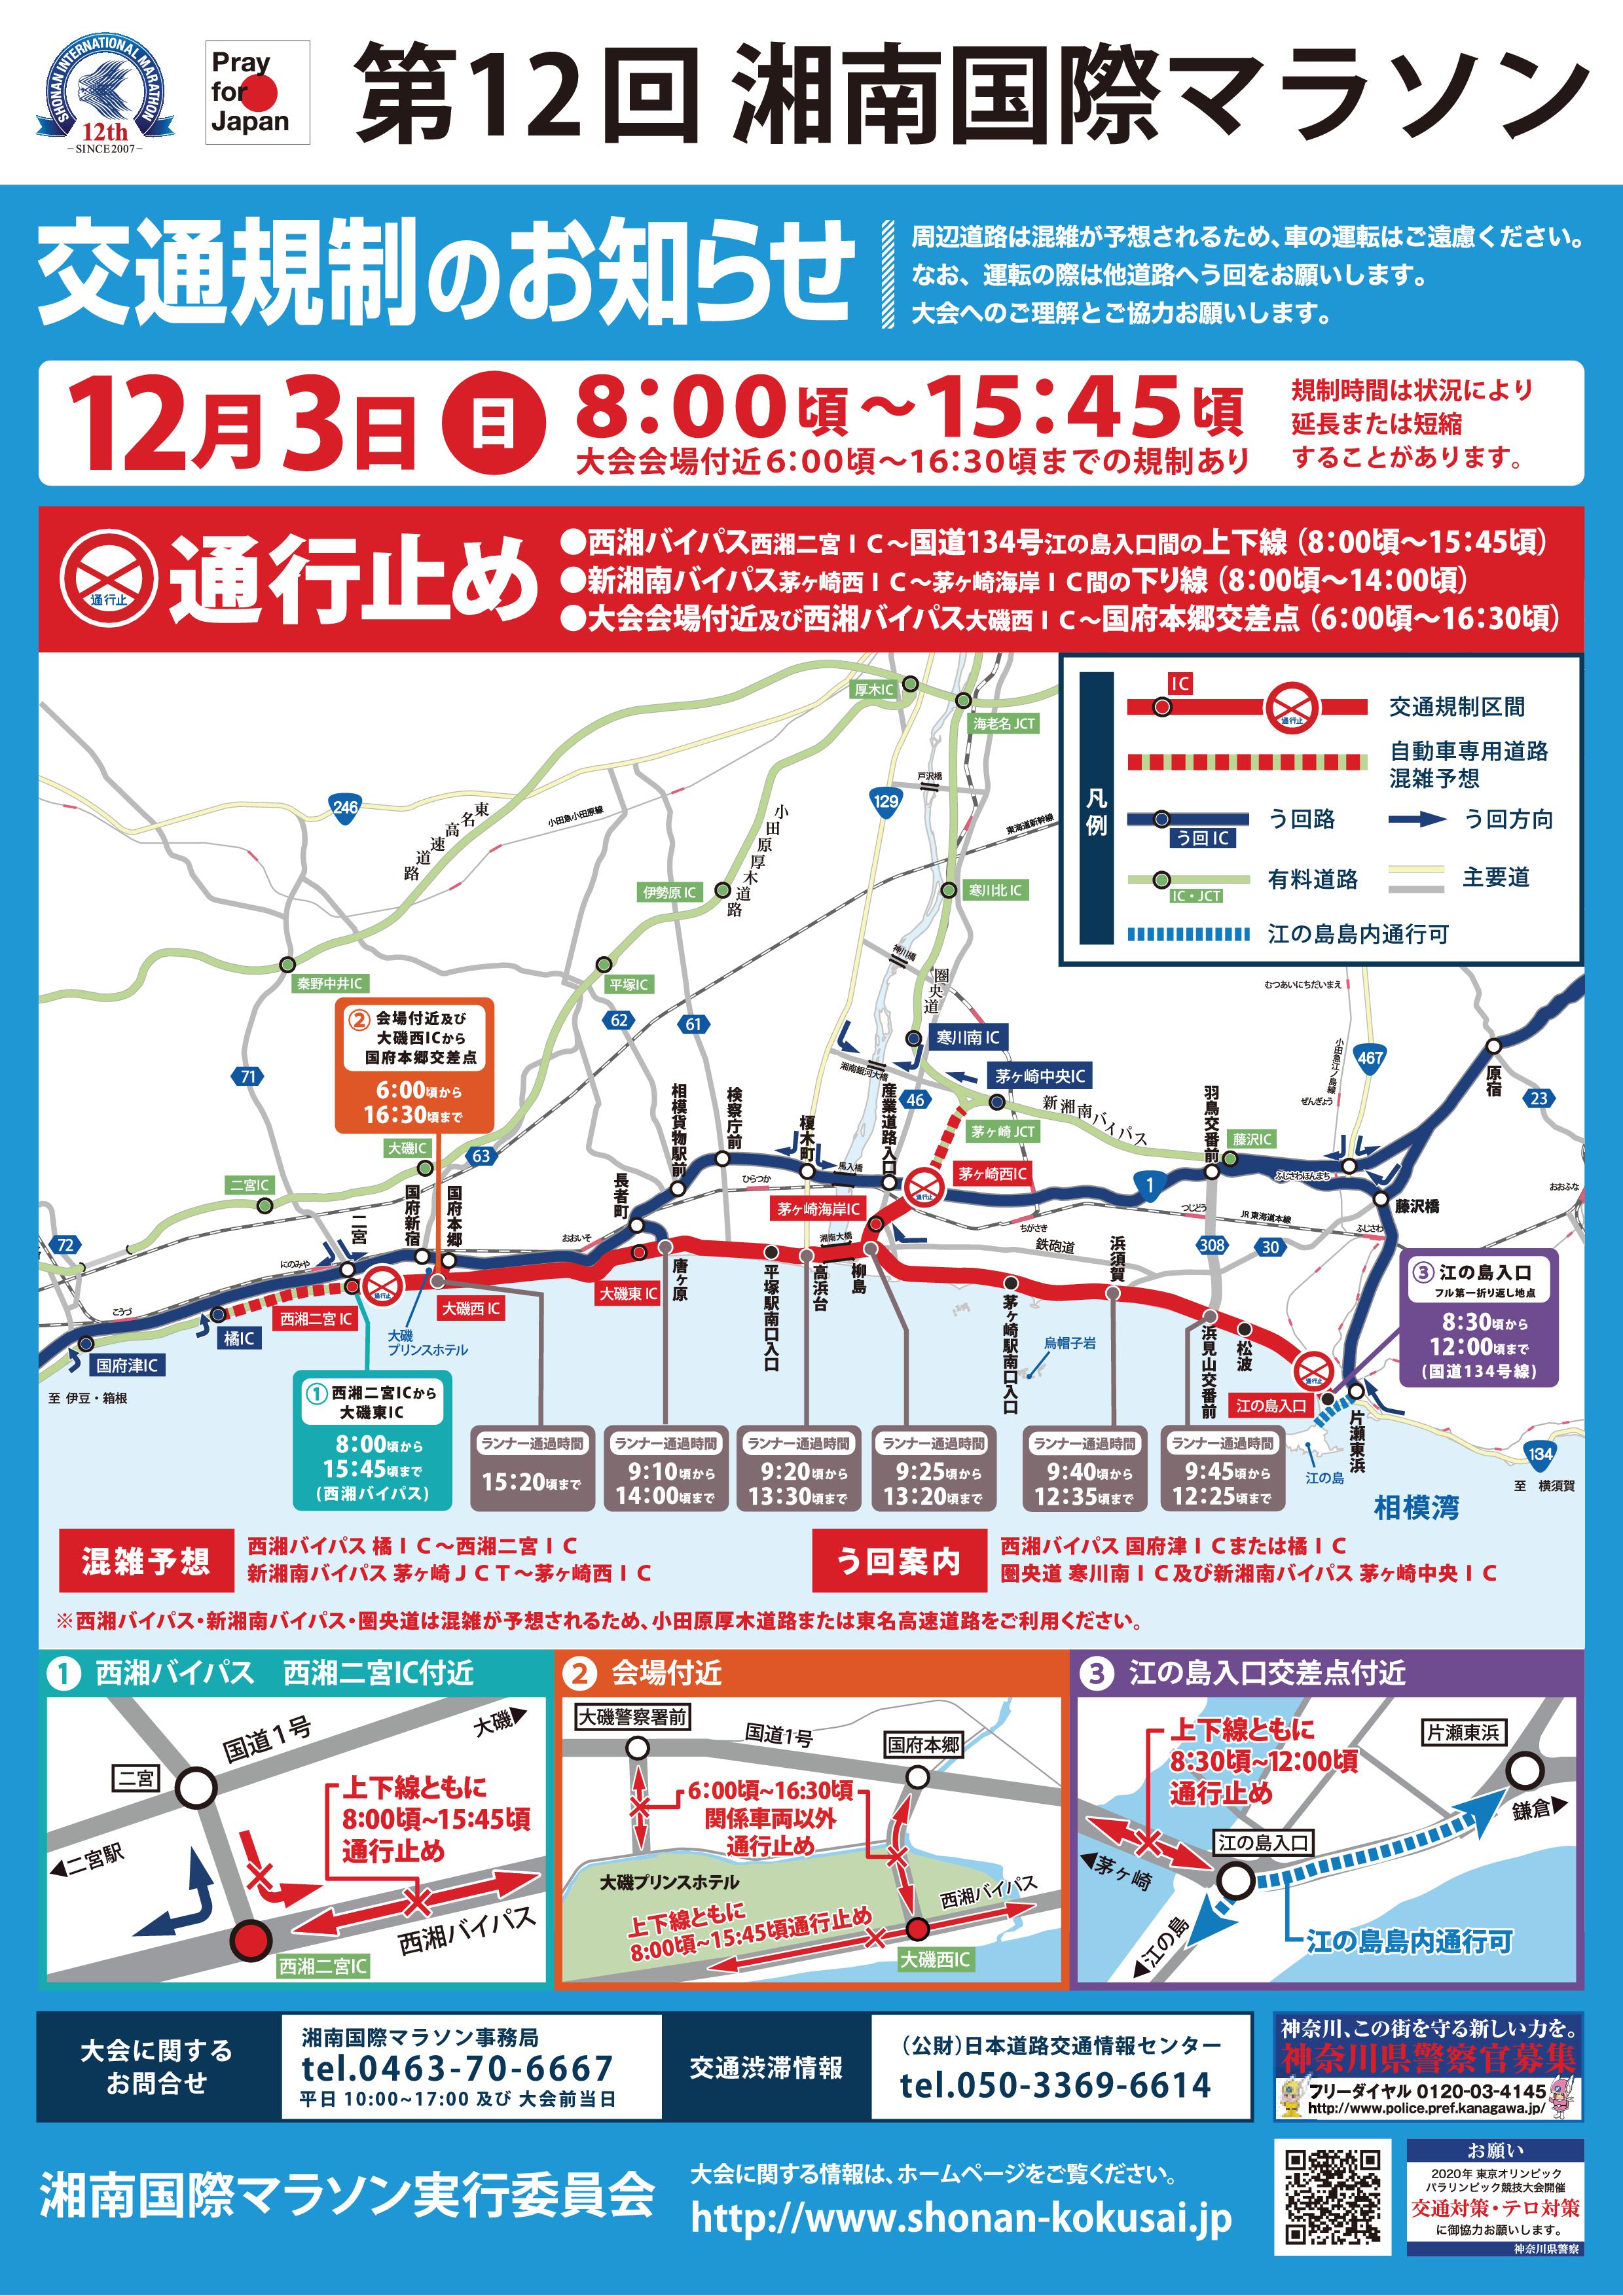 12月3日は湘南国際マラソンが開催されます。